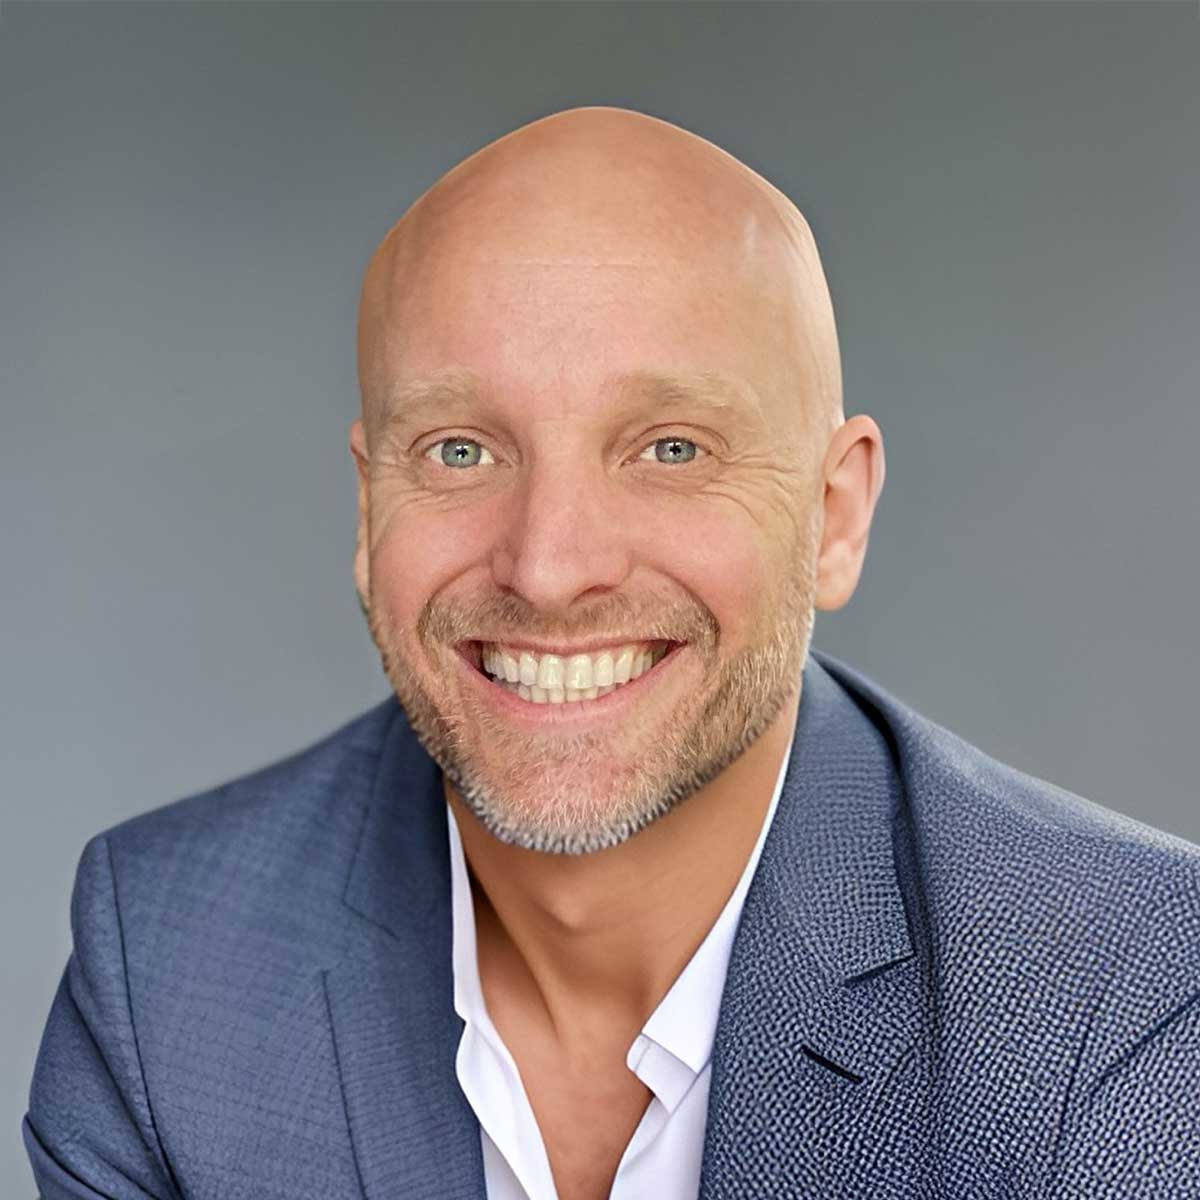 David Lee-Schneider – Founder & CEO of Done Digital Australia